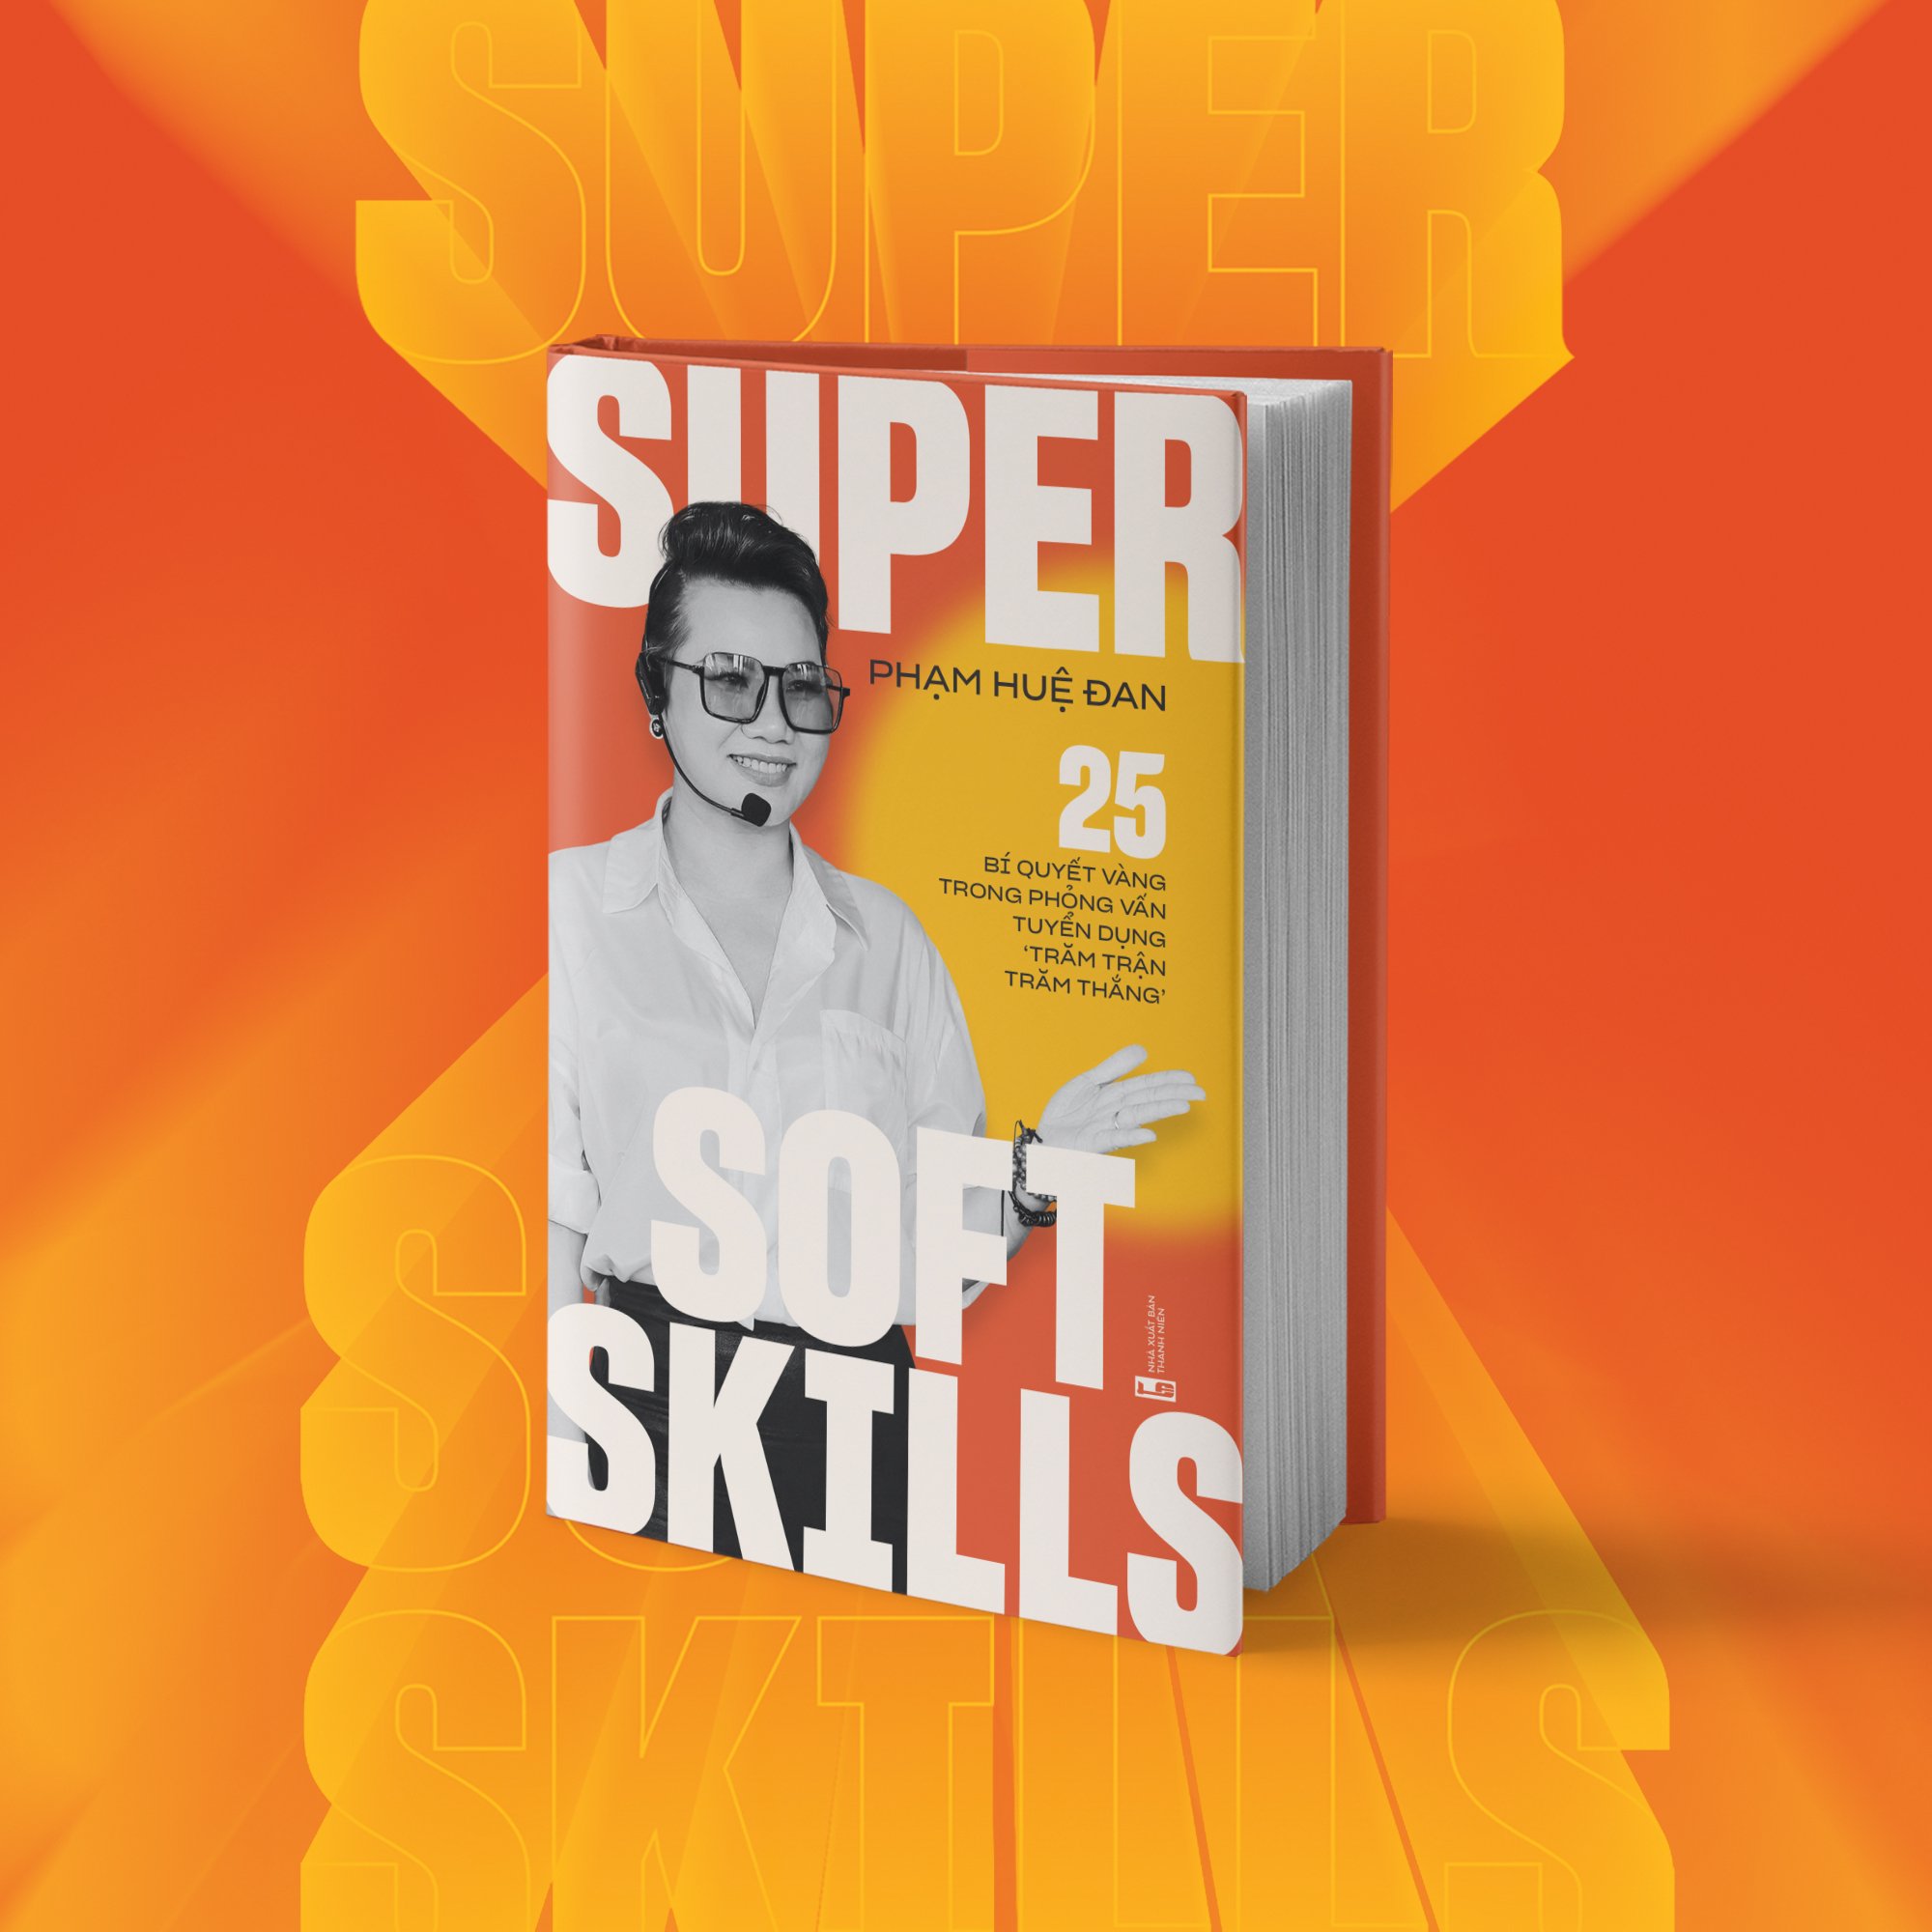 Super Soft Skills - 25 bí quyết vàng trong phỏng vấn tuyển dụng “trăm trận trăm thắng”